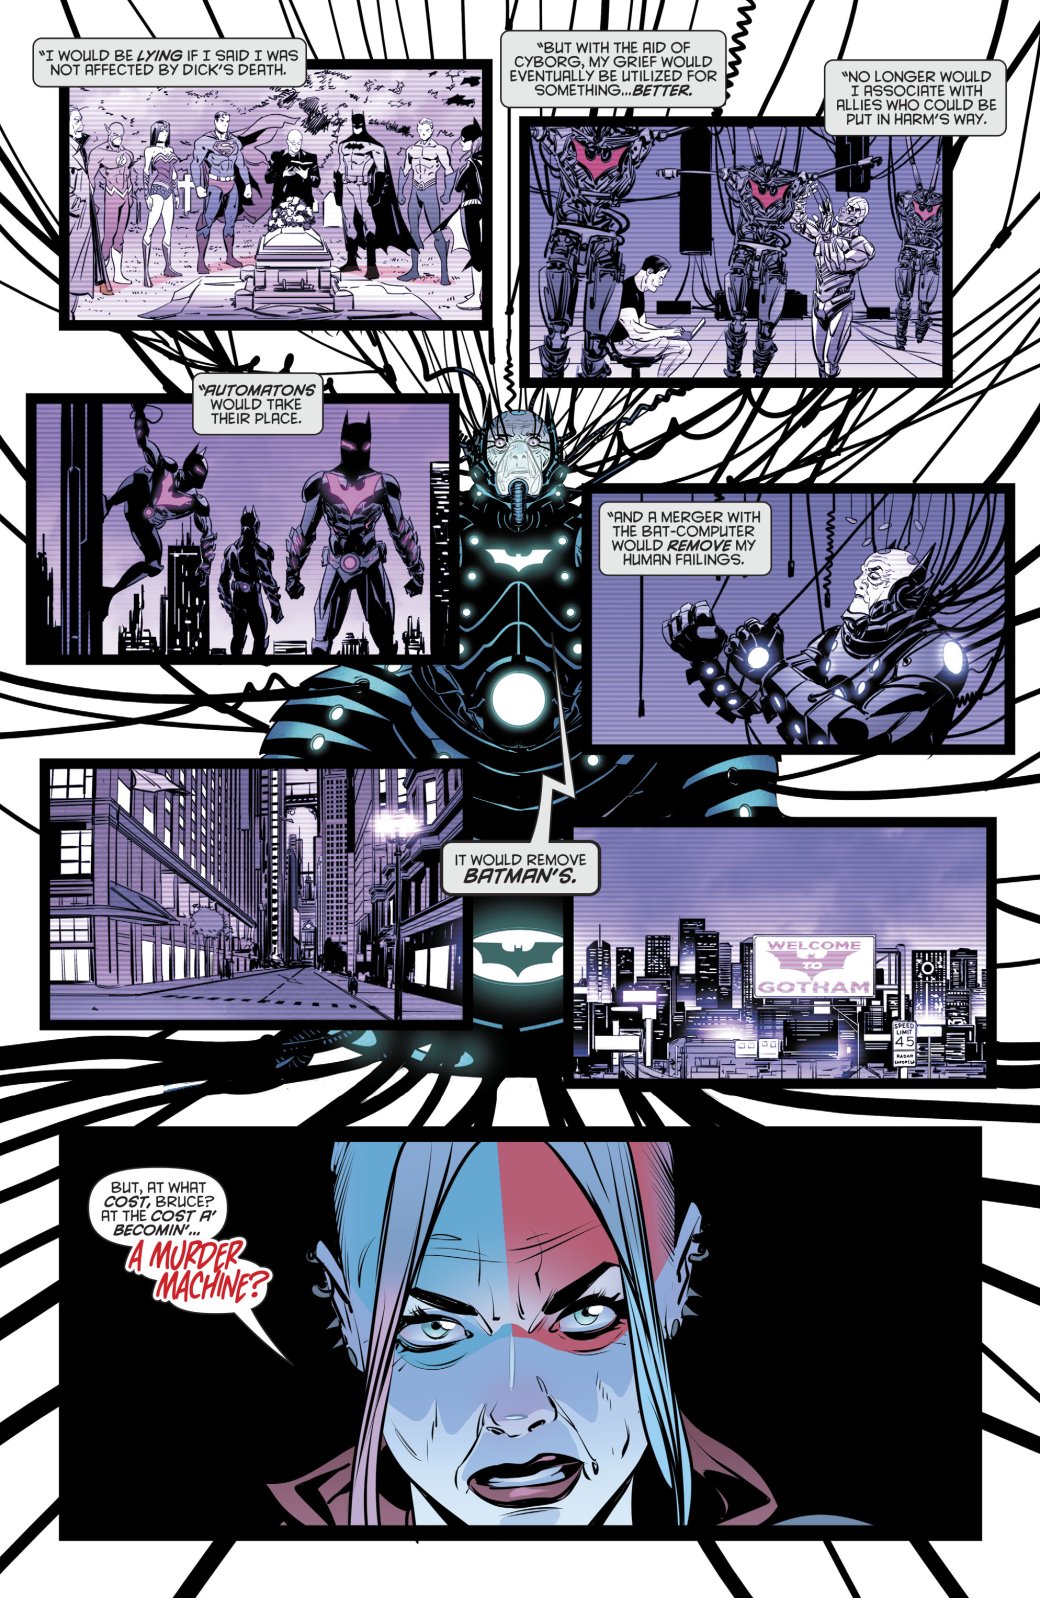 Галерея В постапокалиптическом комиксе DC представили Бэтмена, добившегося тотального контроля в Готэме - 2 фото